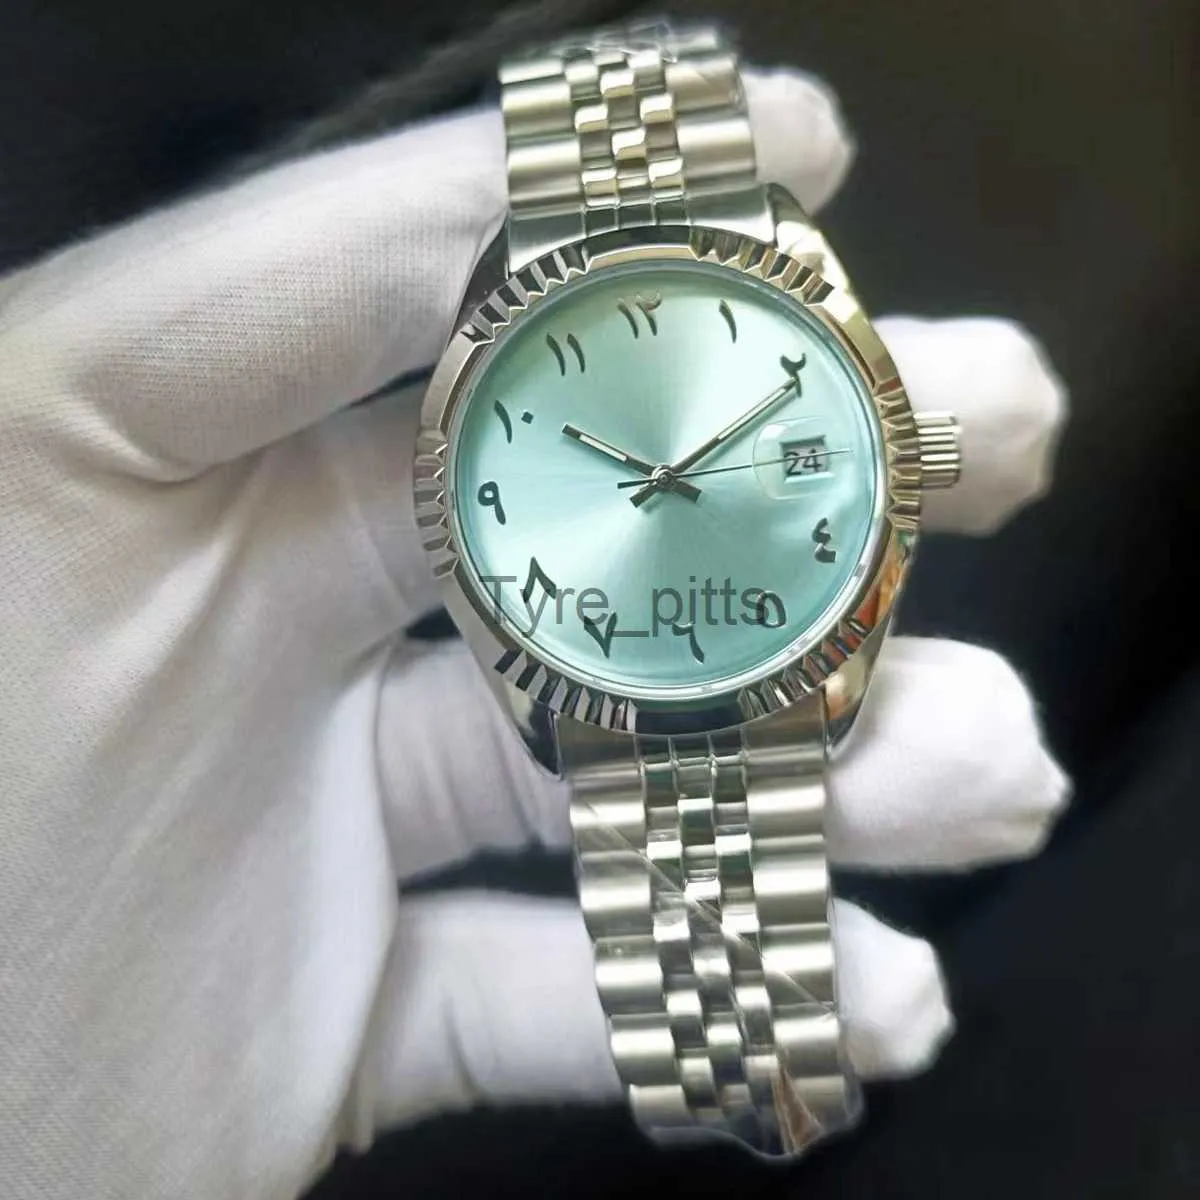 Andere tragbare Geräte babyblau arabische Uhren Unisex Stahl Watchband Mechanische Armbanduhr wasserdichte X0821